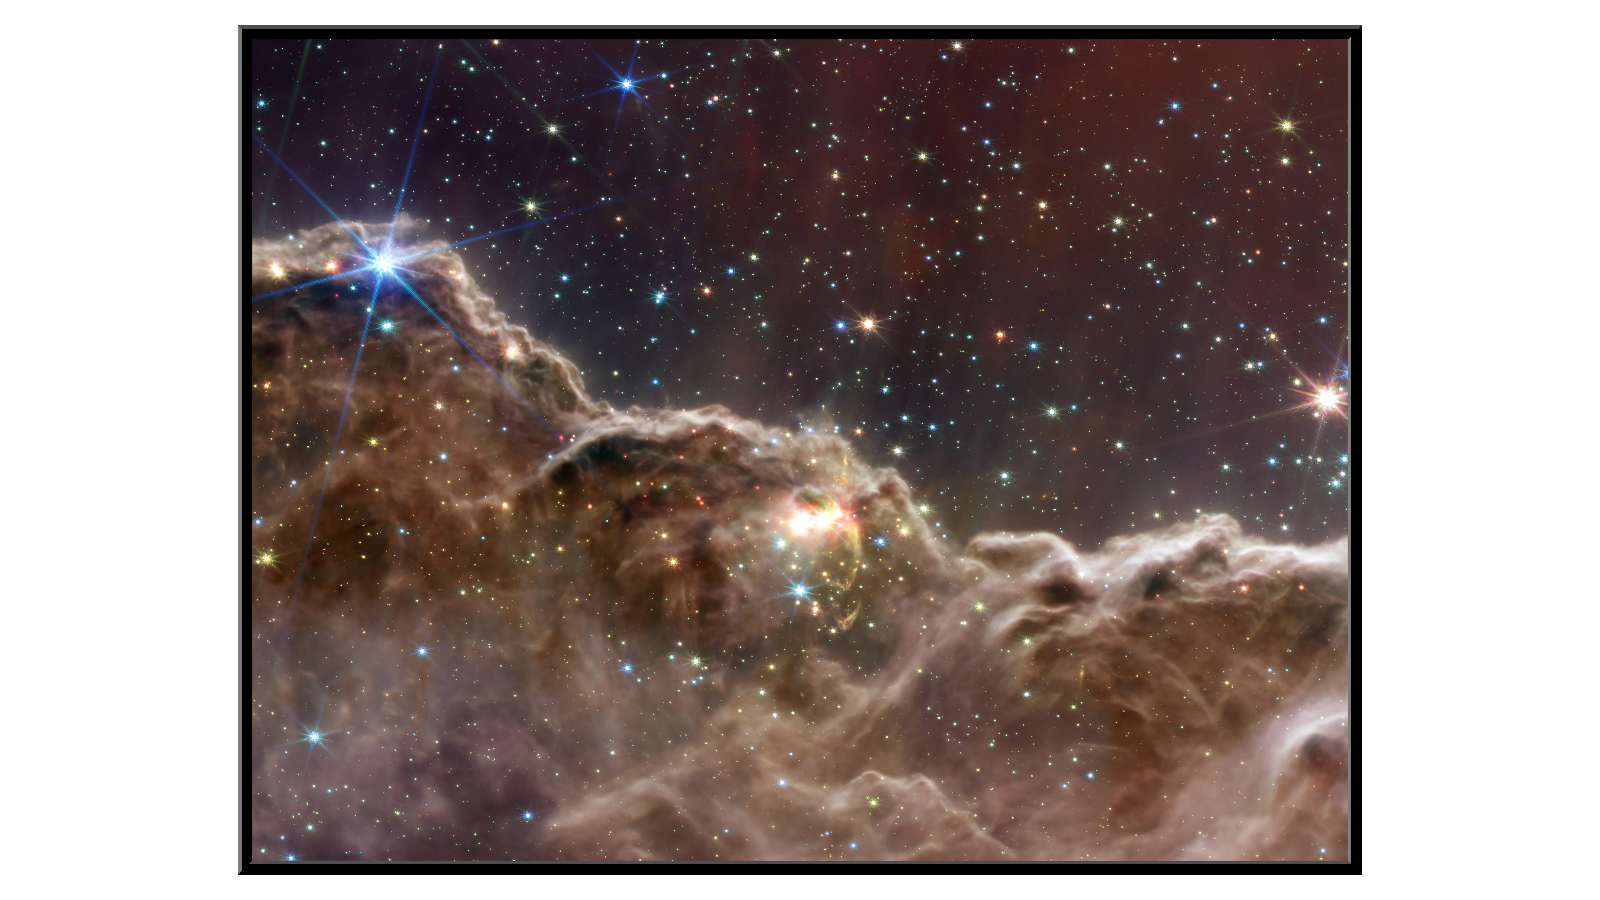 Cosmic Cliffs in the Carina Nebula - 2